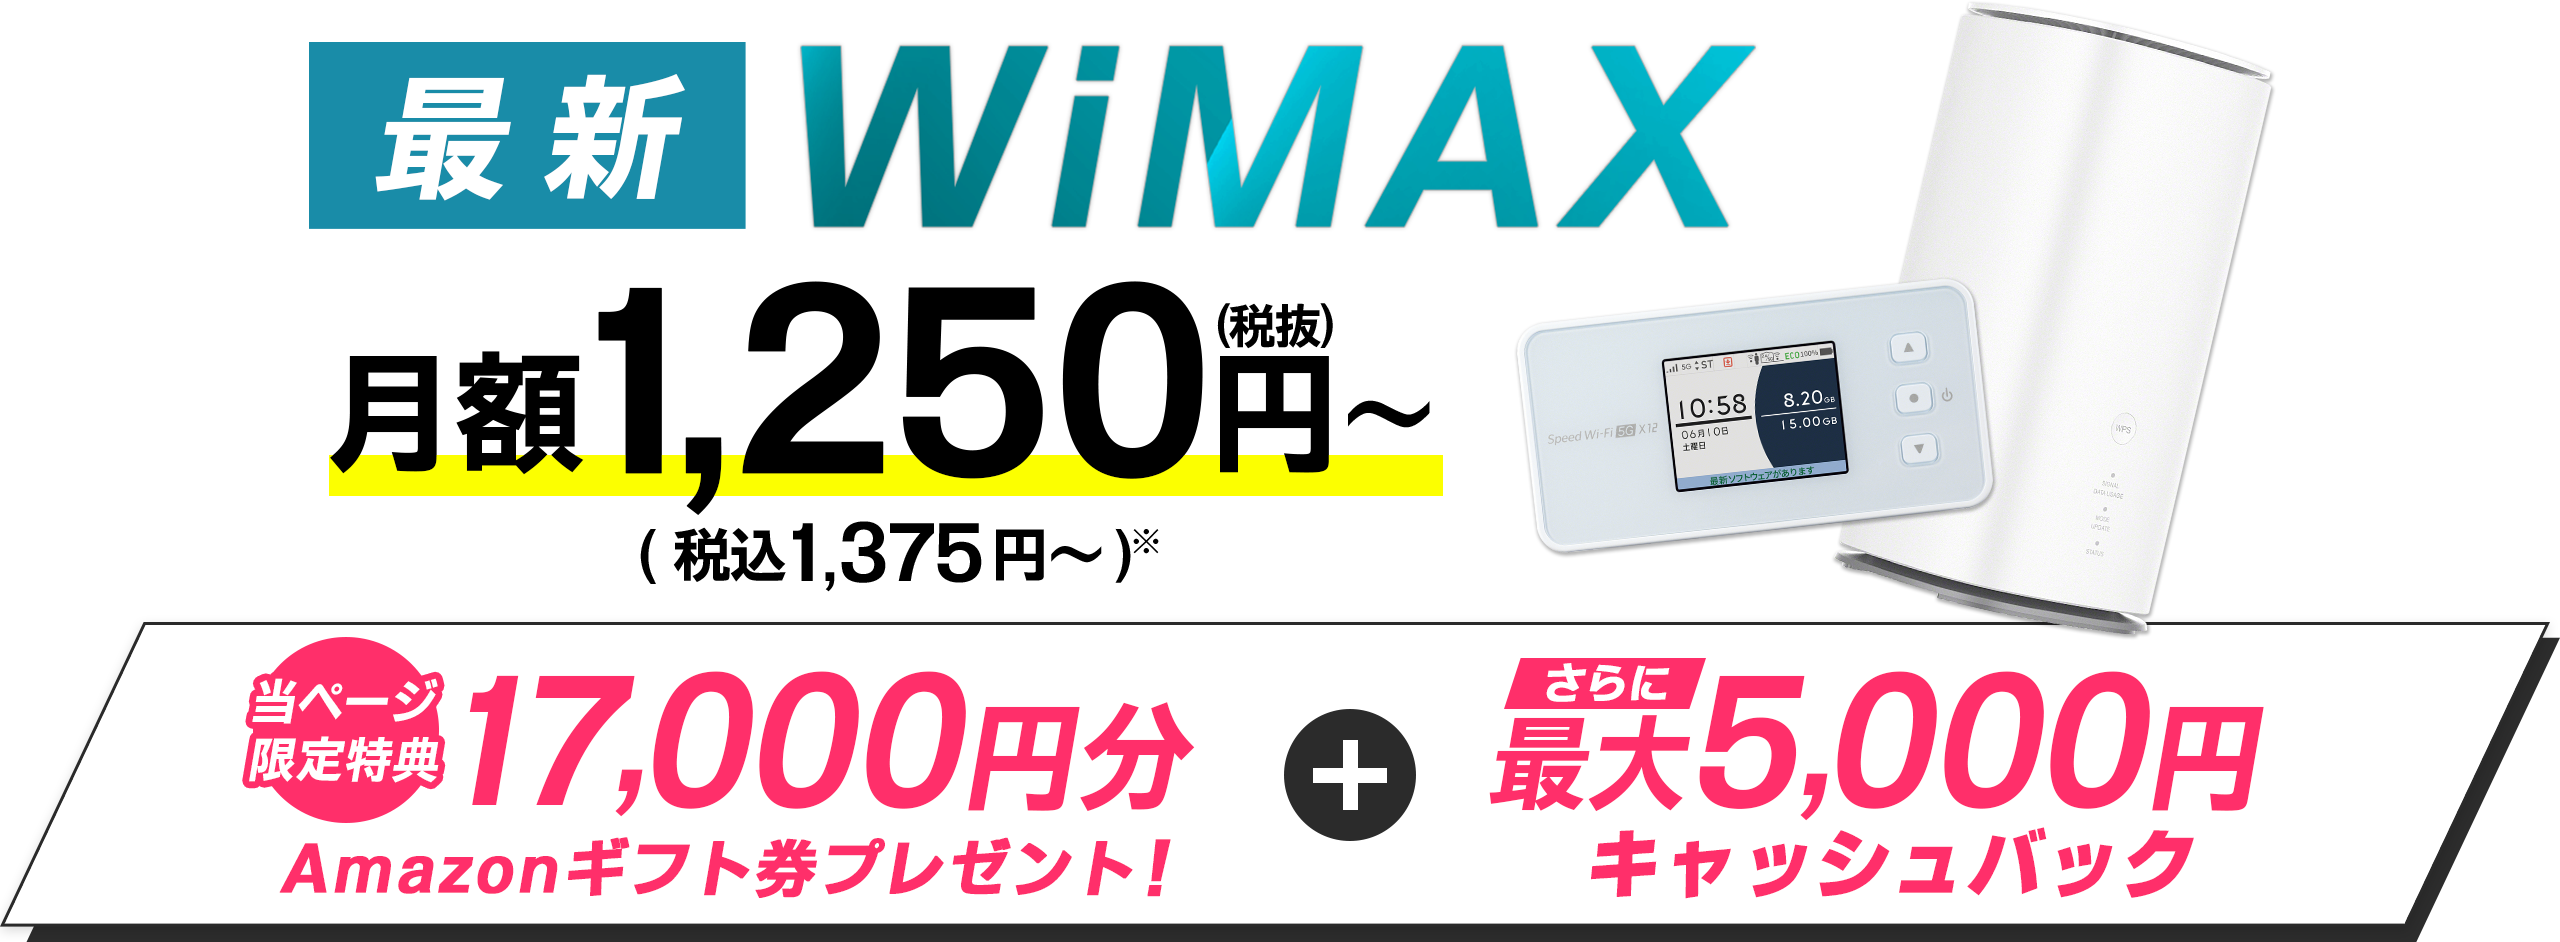 最新WiMAX　当ページ限定特典17,000円分Amazonギフトカードプレゼント + さらに最大5,000円キャッシュバック